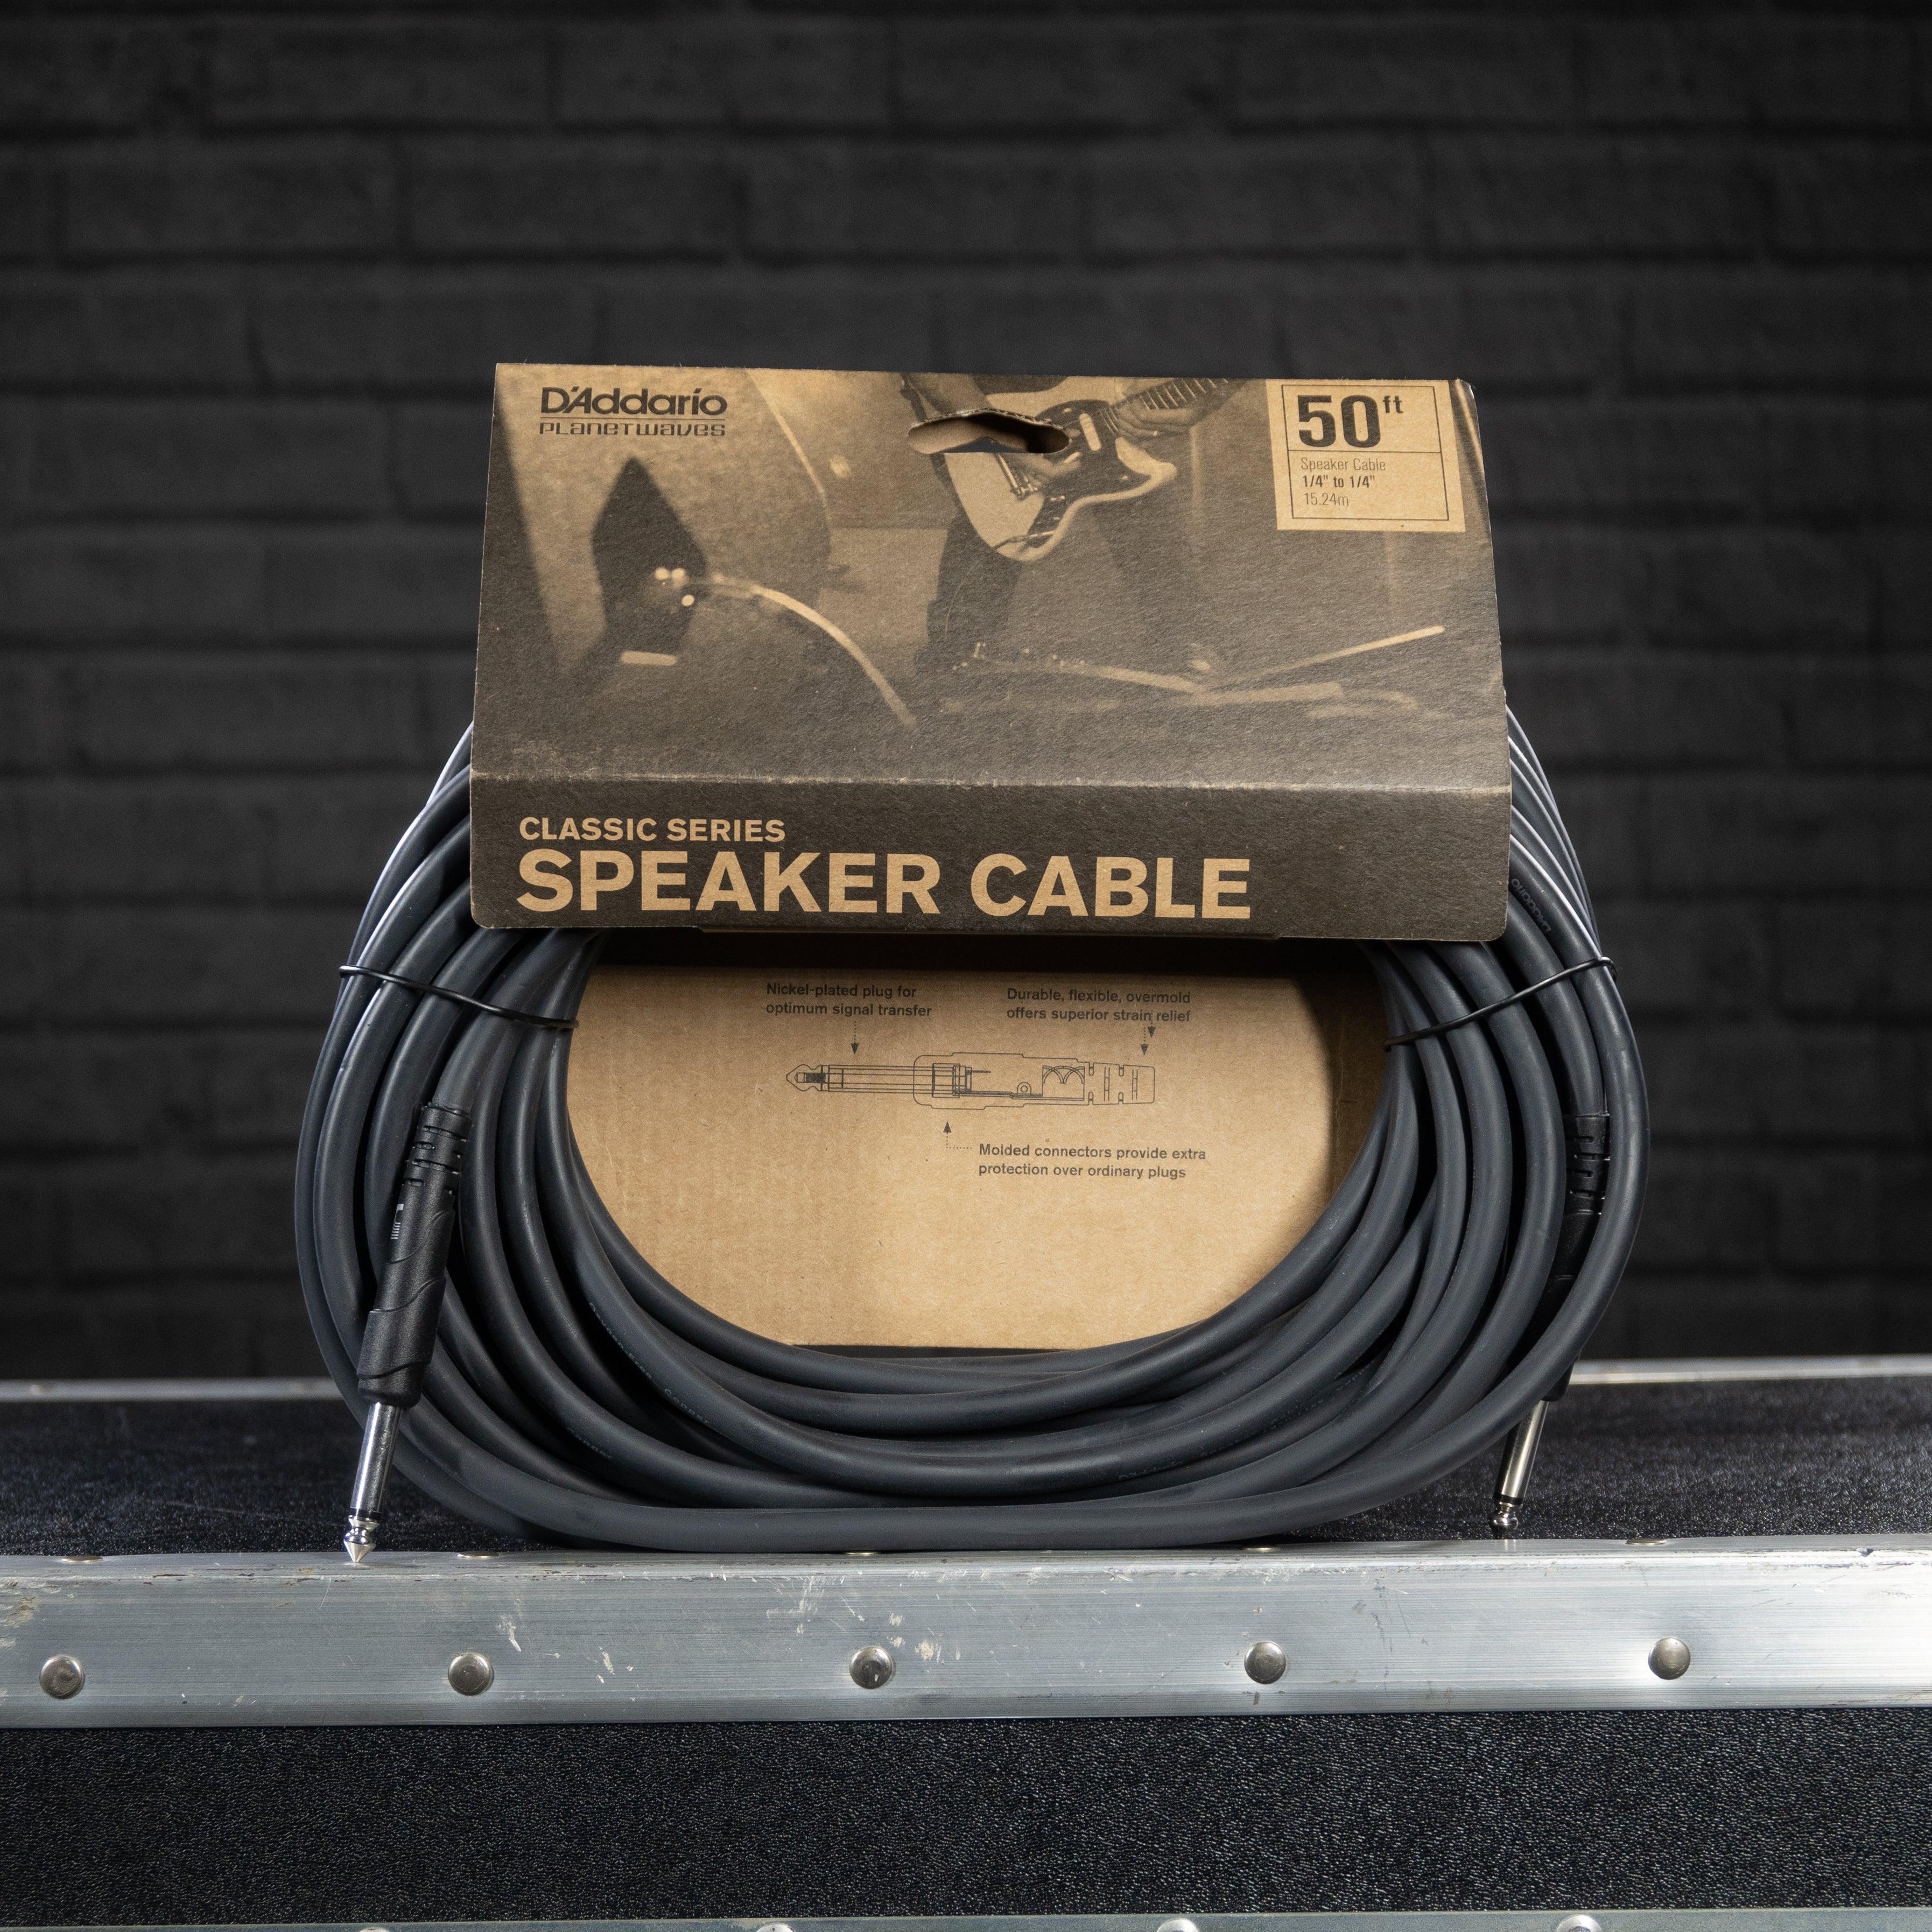 D'addario Classic Series Speaker Cable 50 ft. - Impulse Music Co.